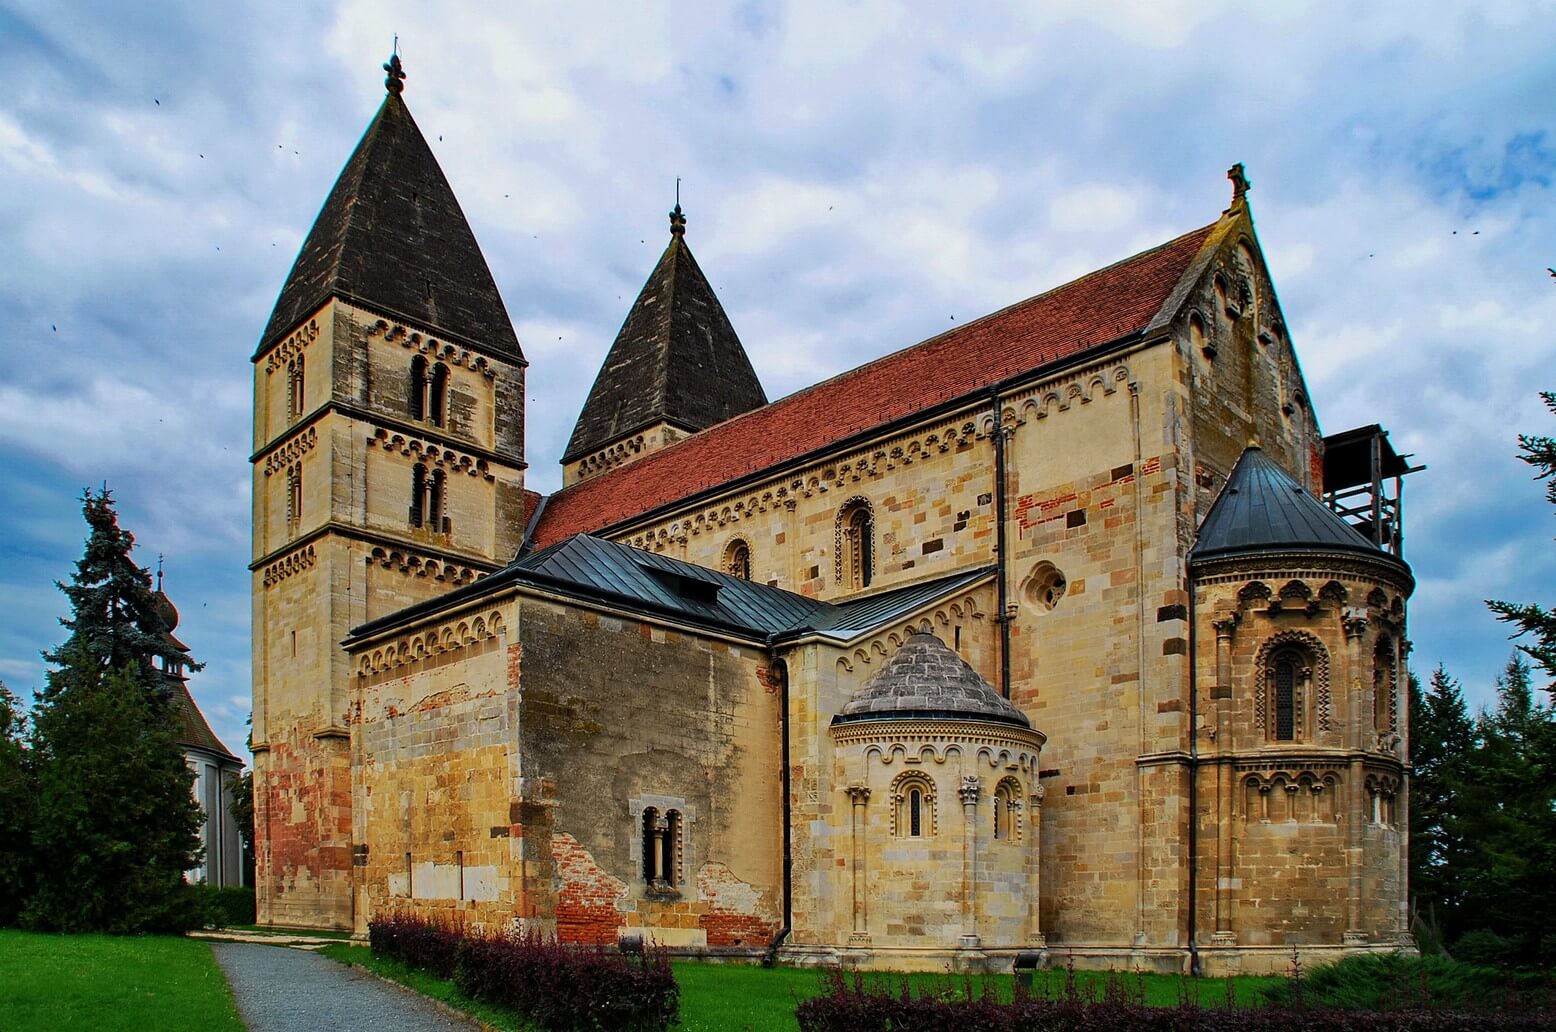 Teljesen felújítják az Árpád-kori jáki templomot